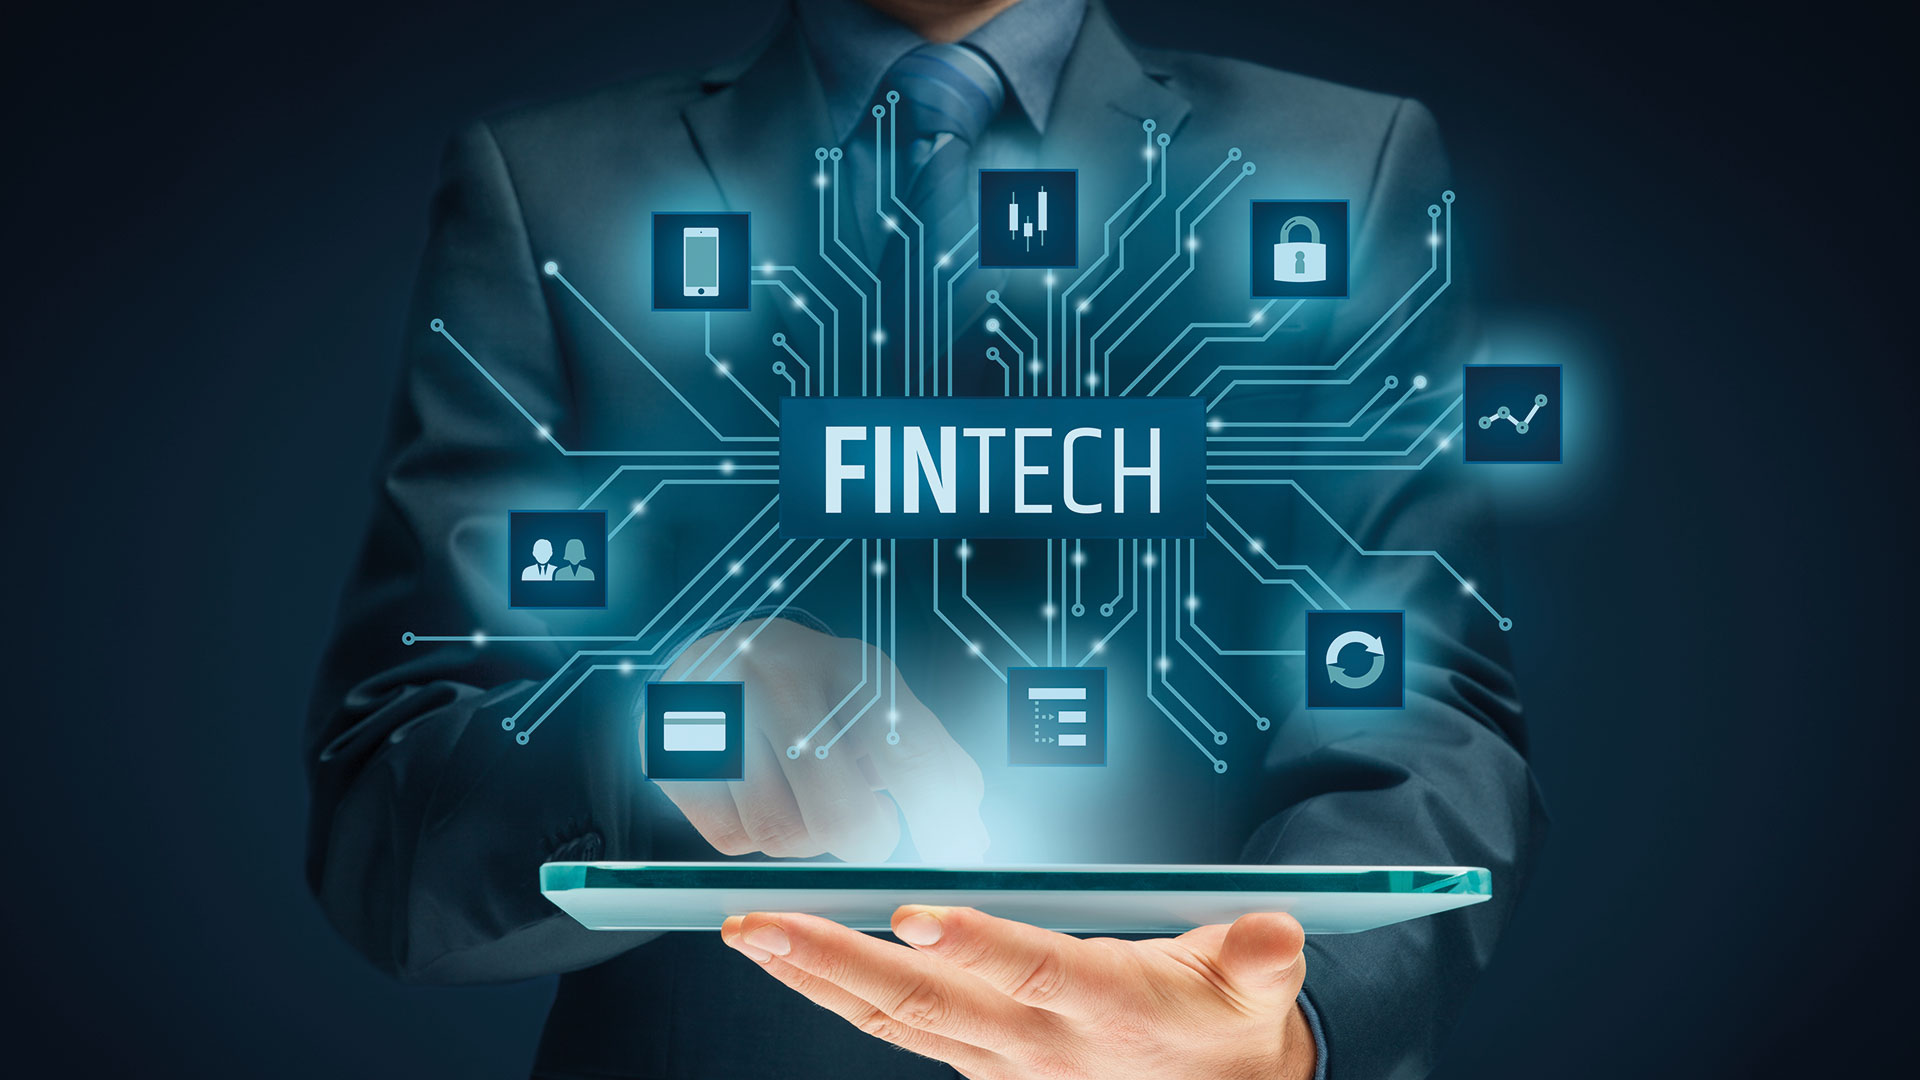 Fintech financial technology concept